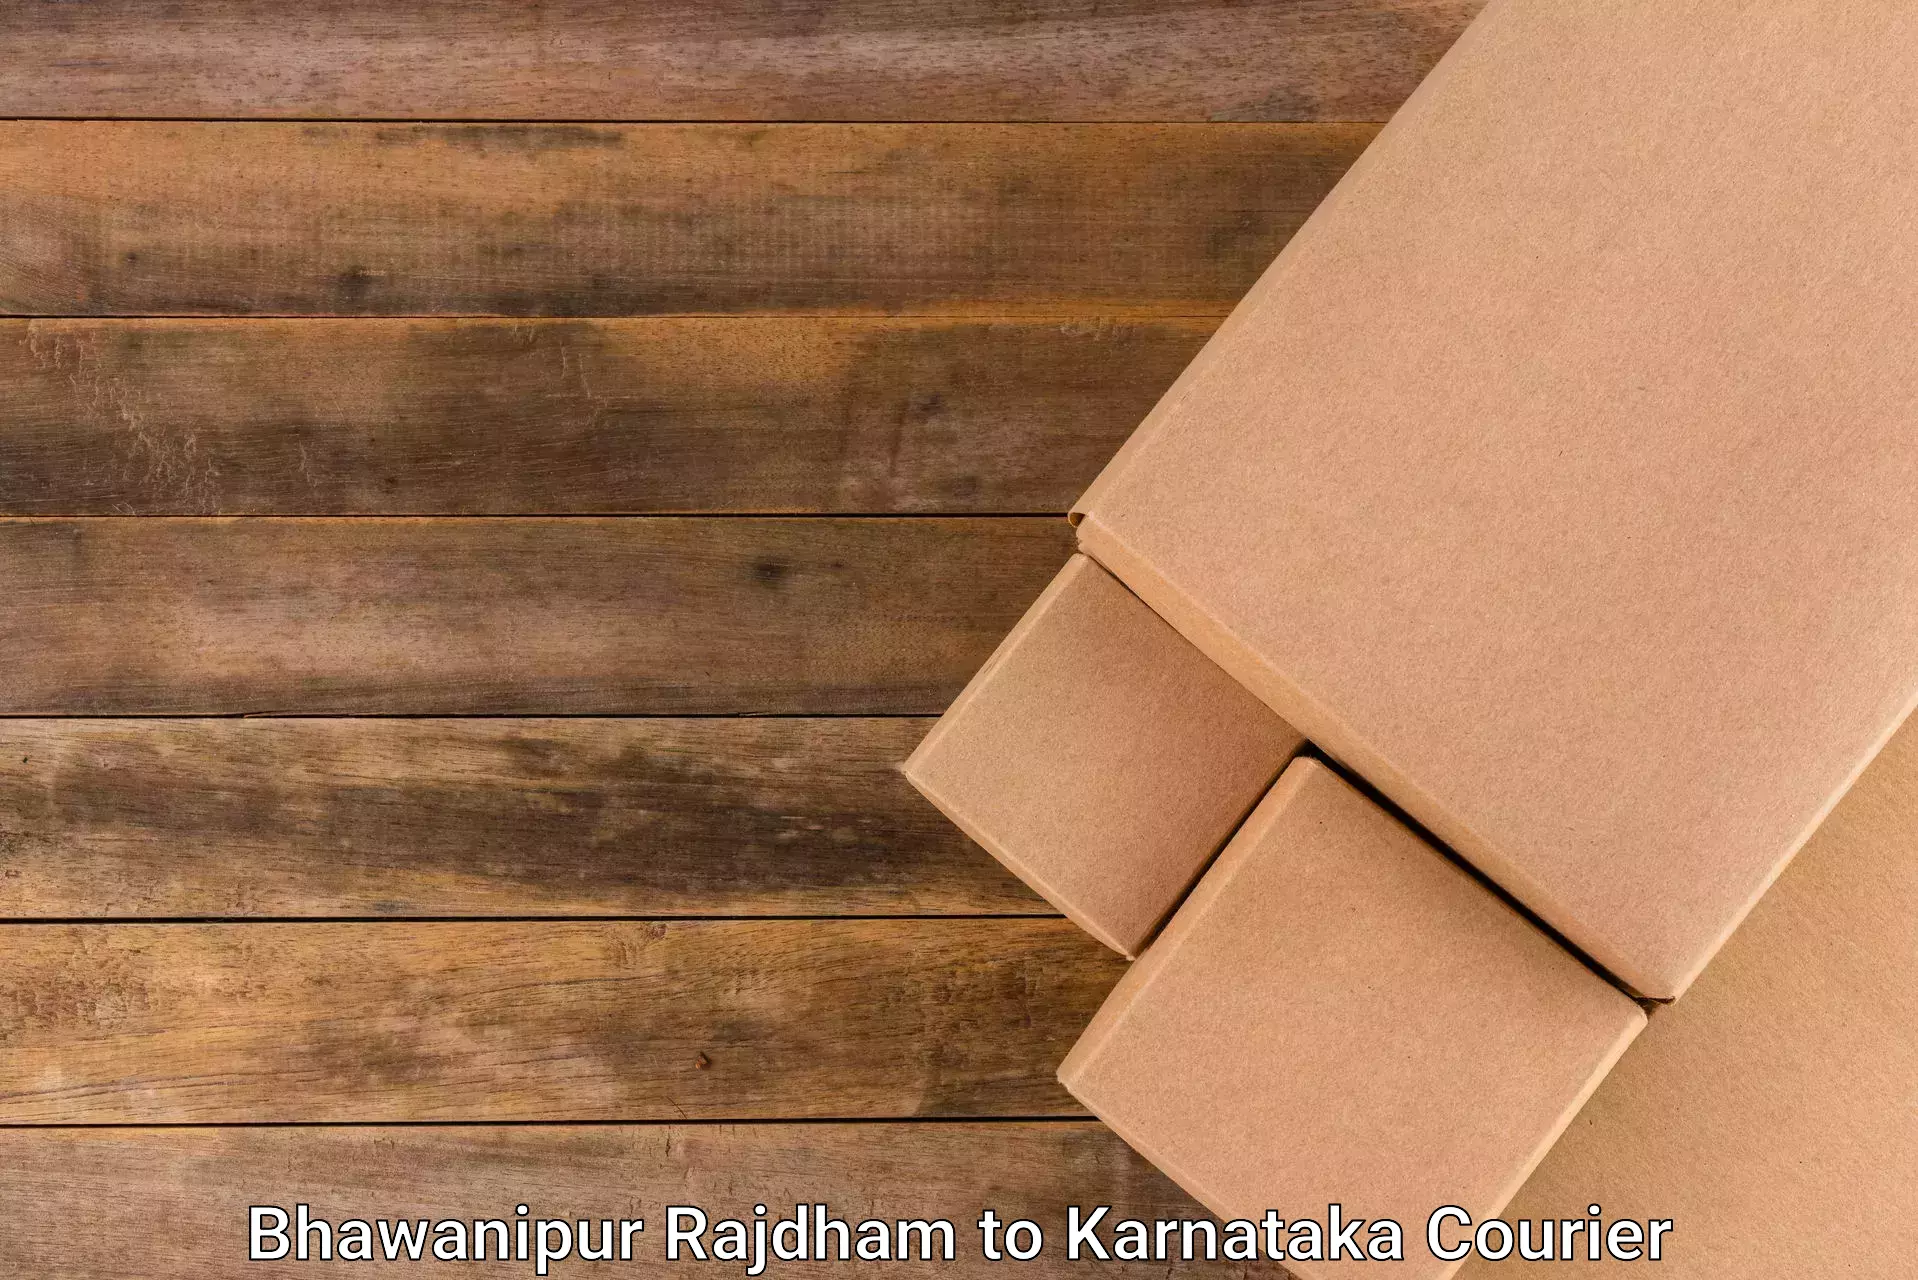 24/7 courier service in Bhawanipur Rajdham to Karnataka